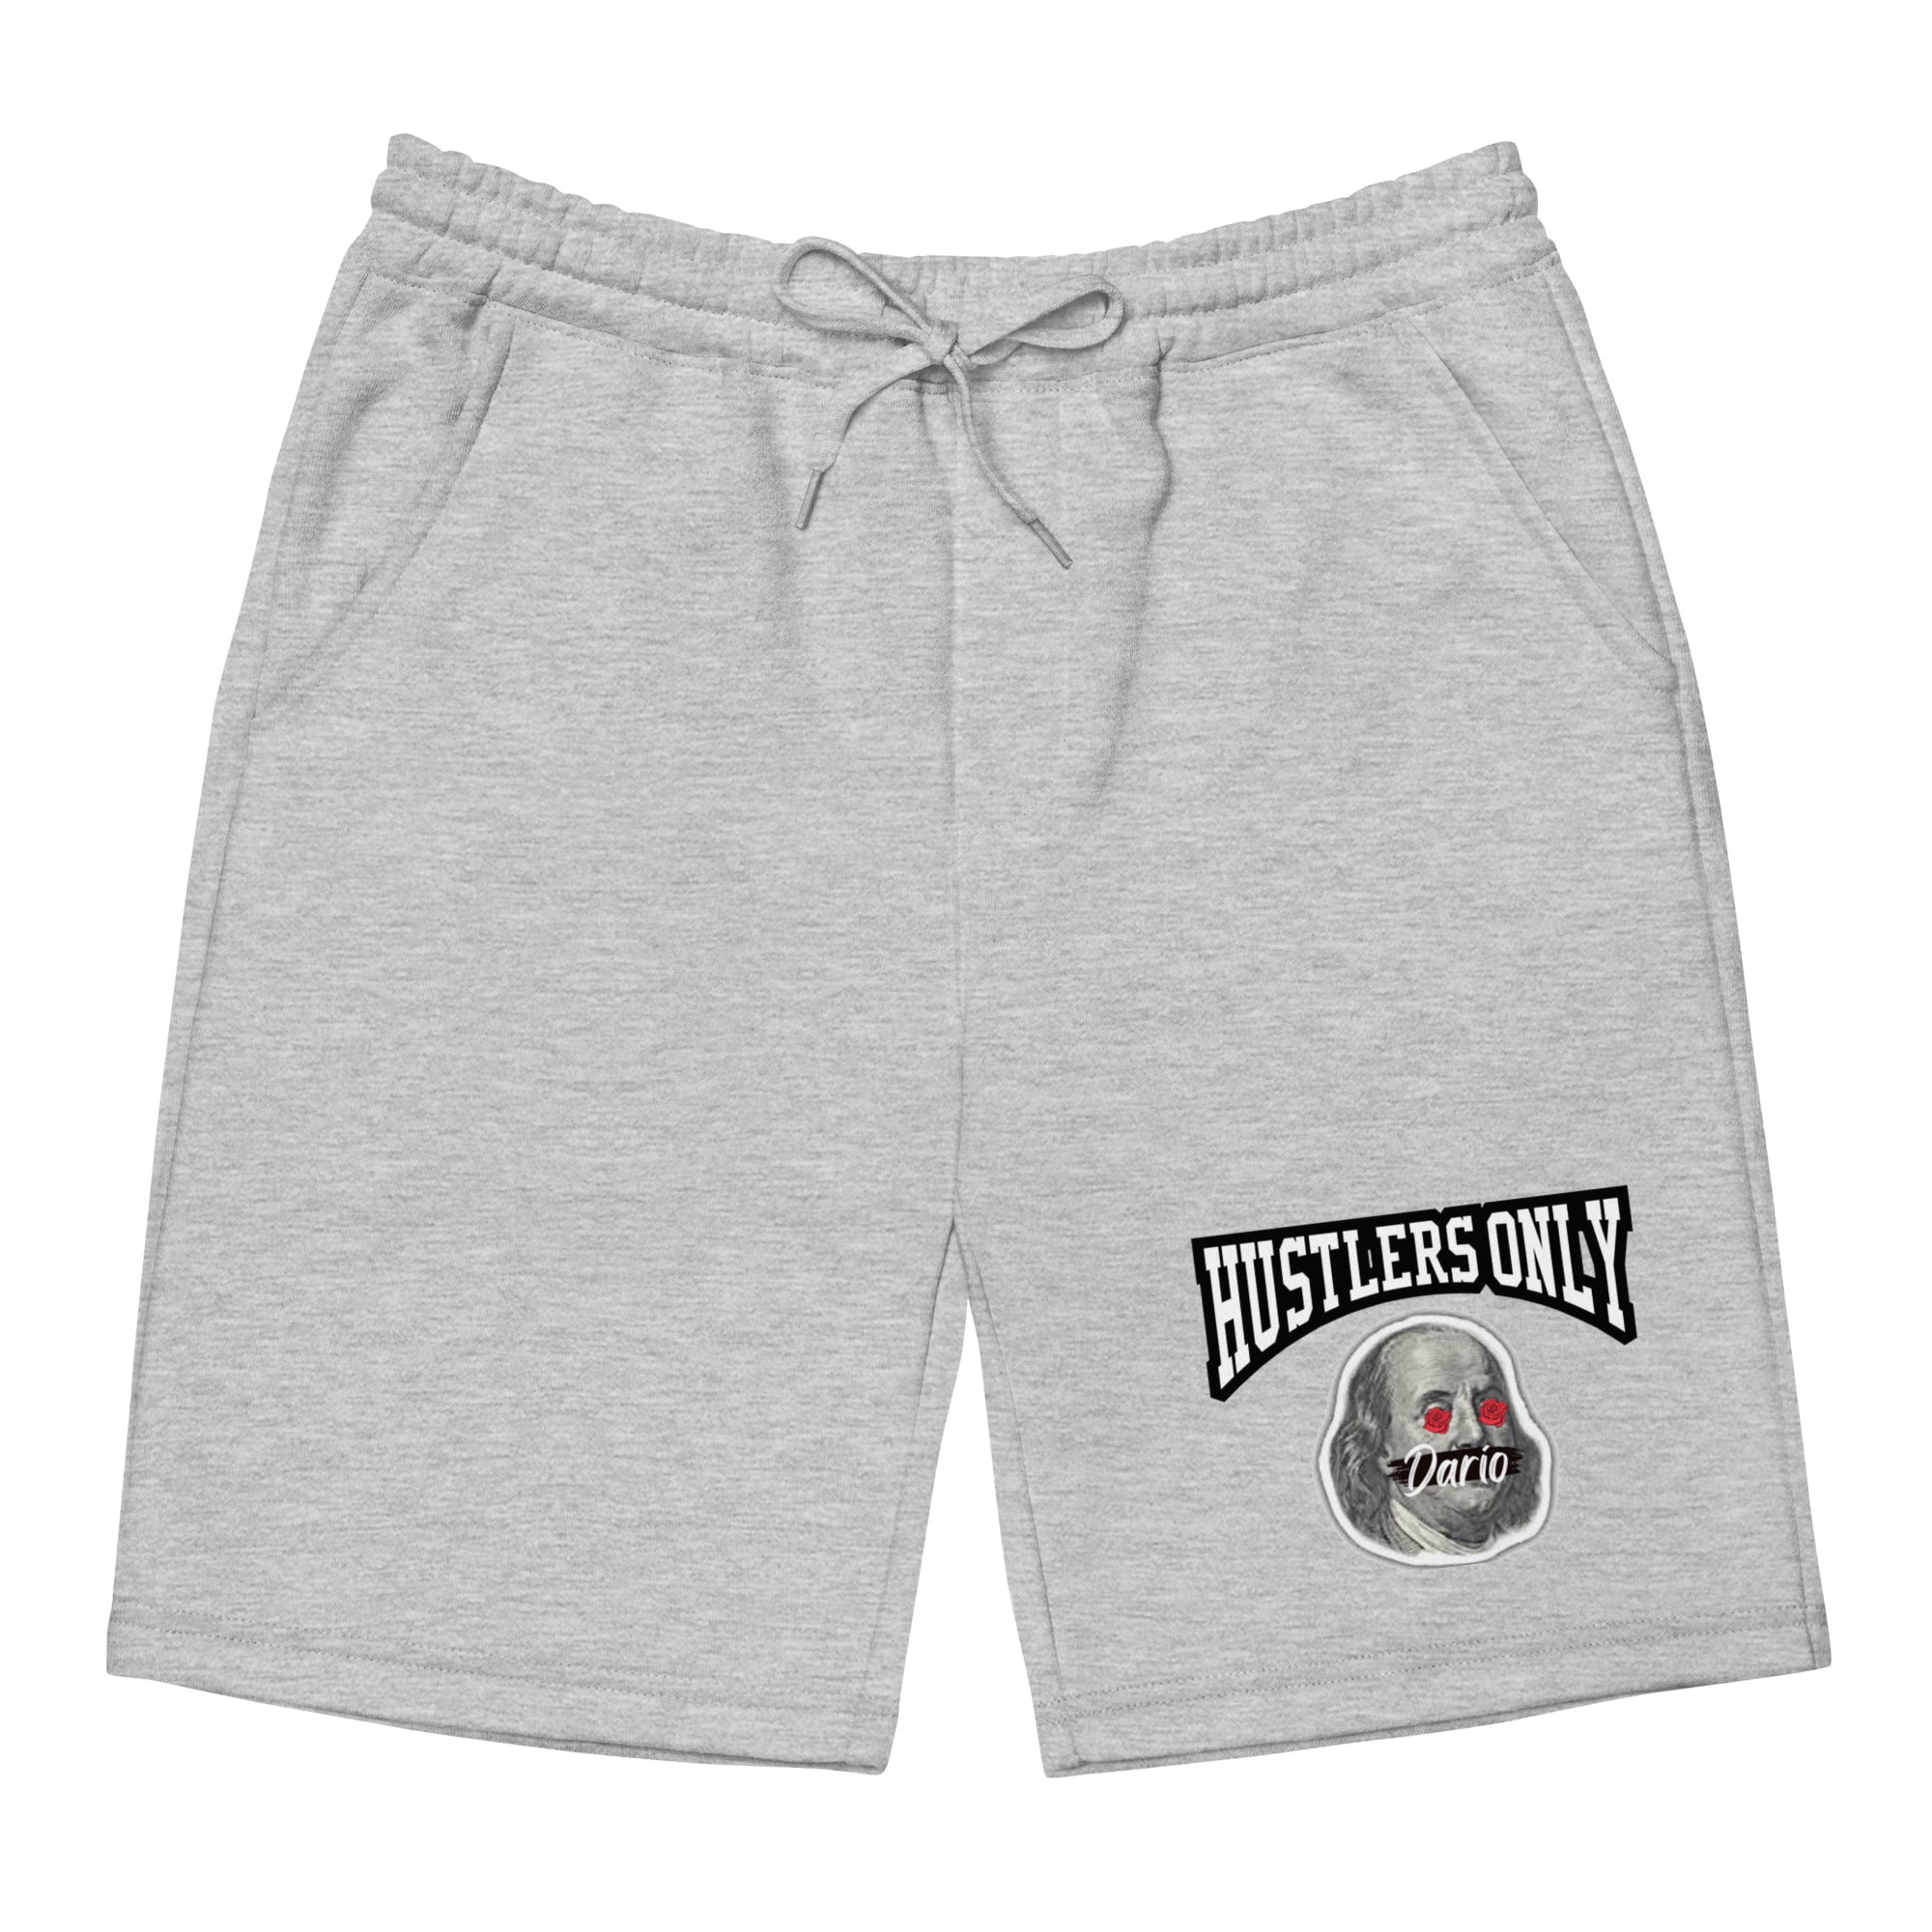 Men's Hustler$ Only White shorts